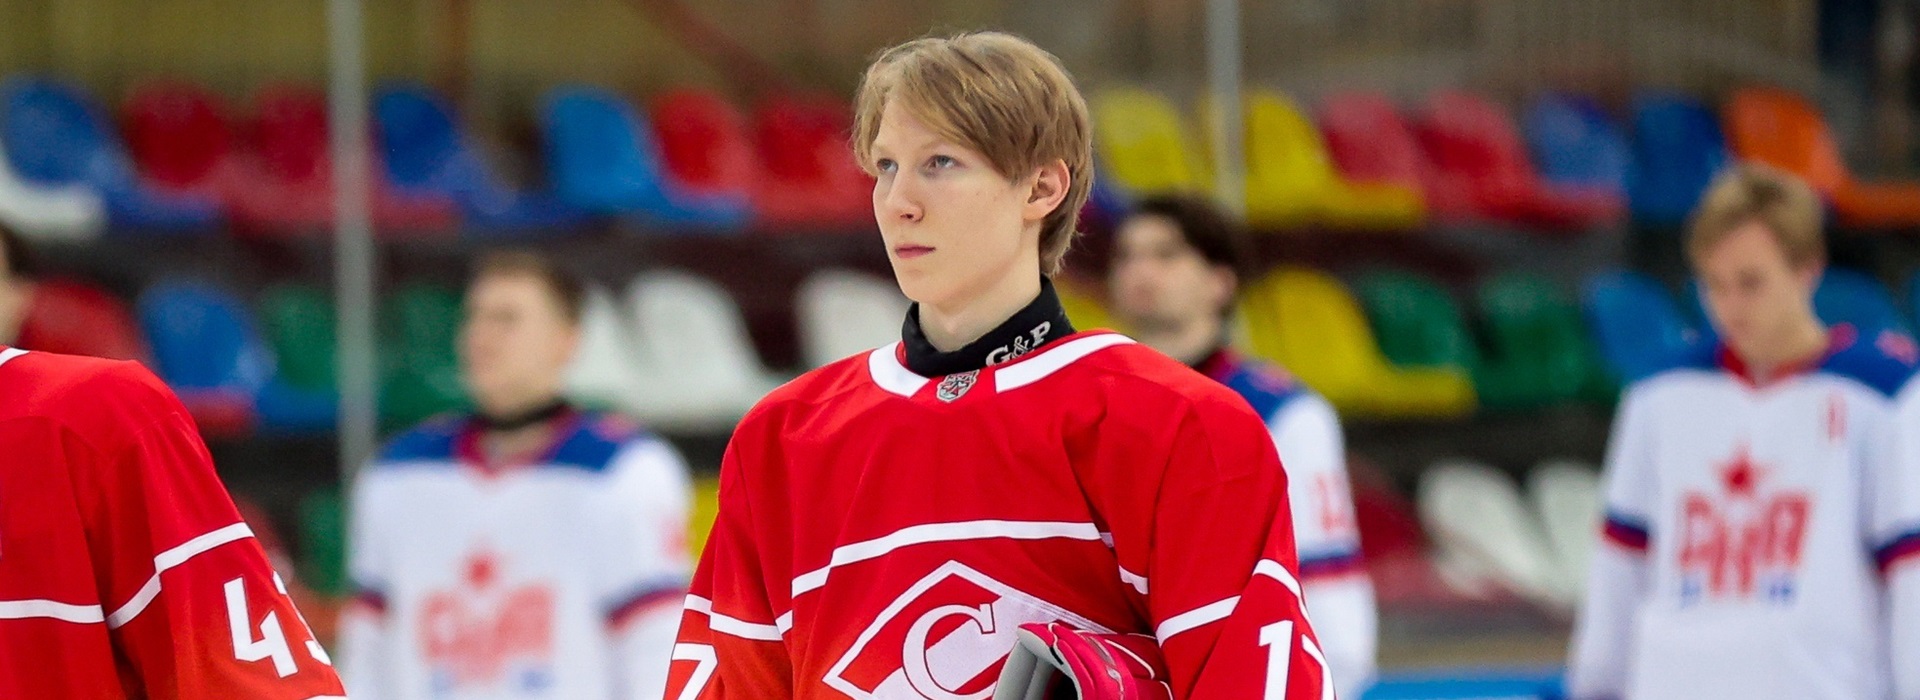 Глеб Семёнов в составе юниорской сборной России до 17 лет